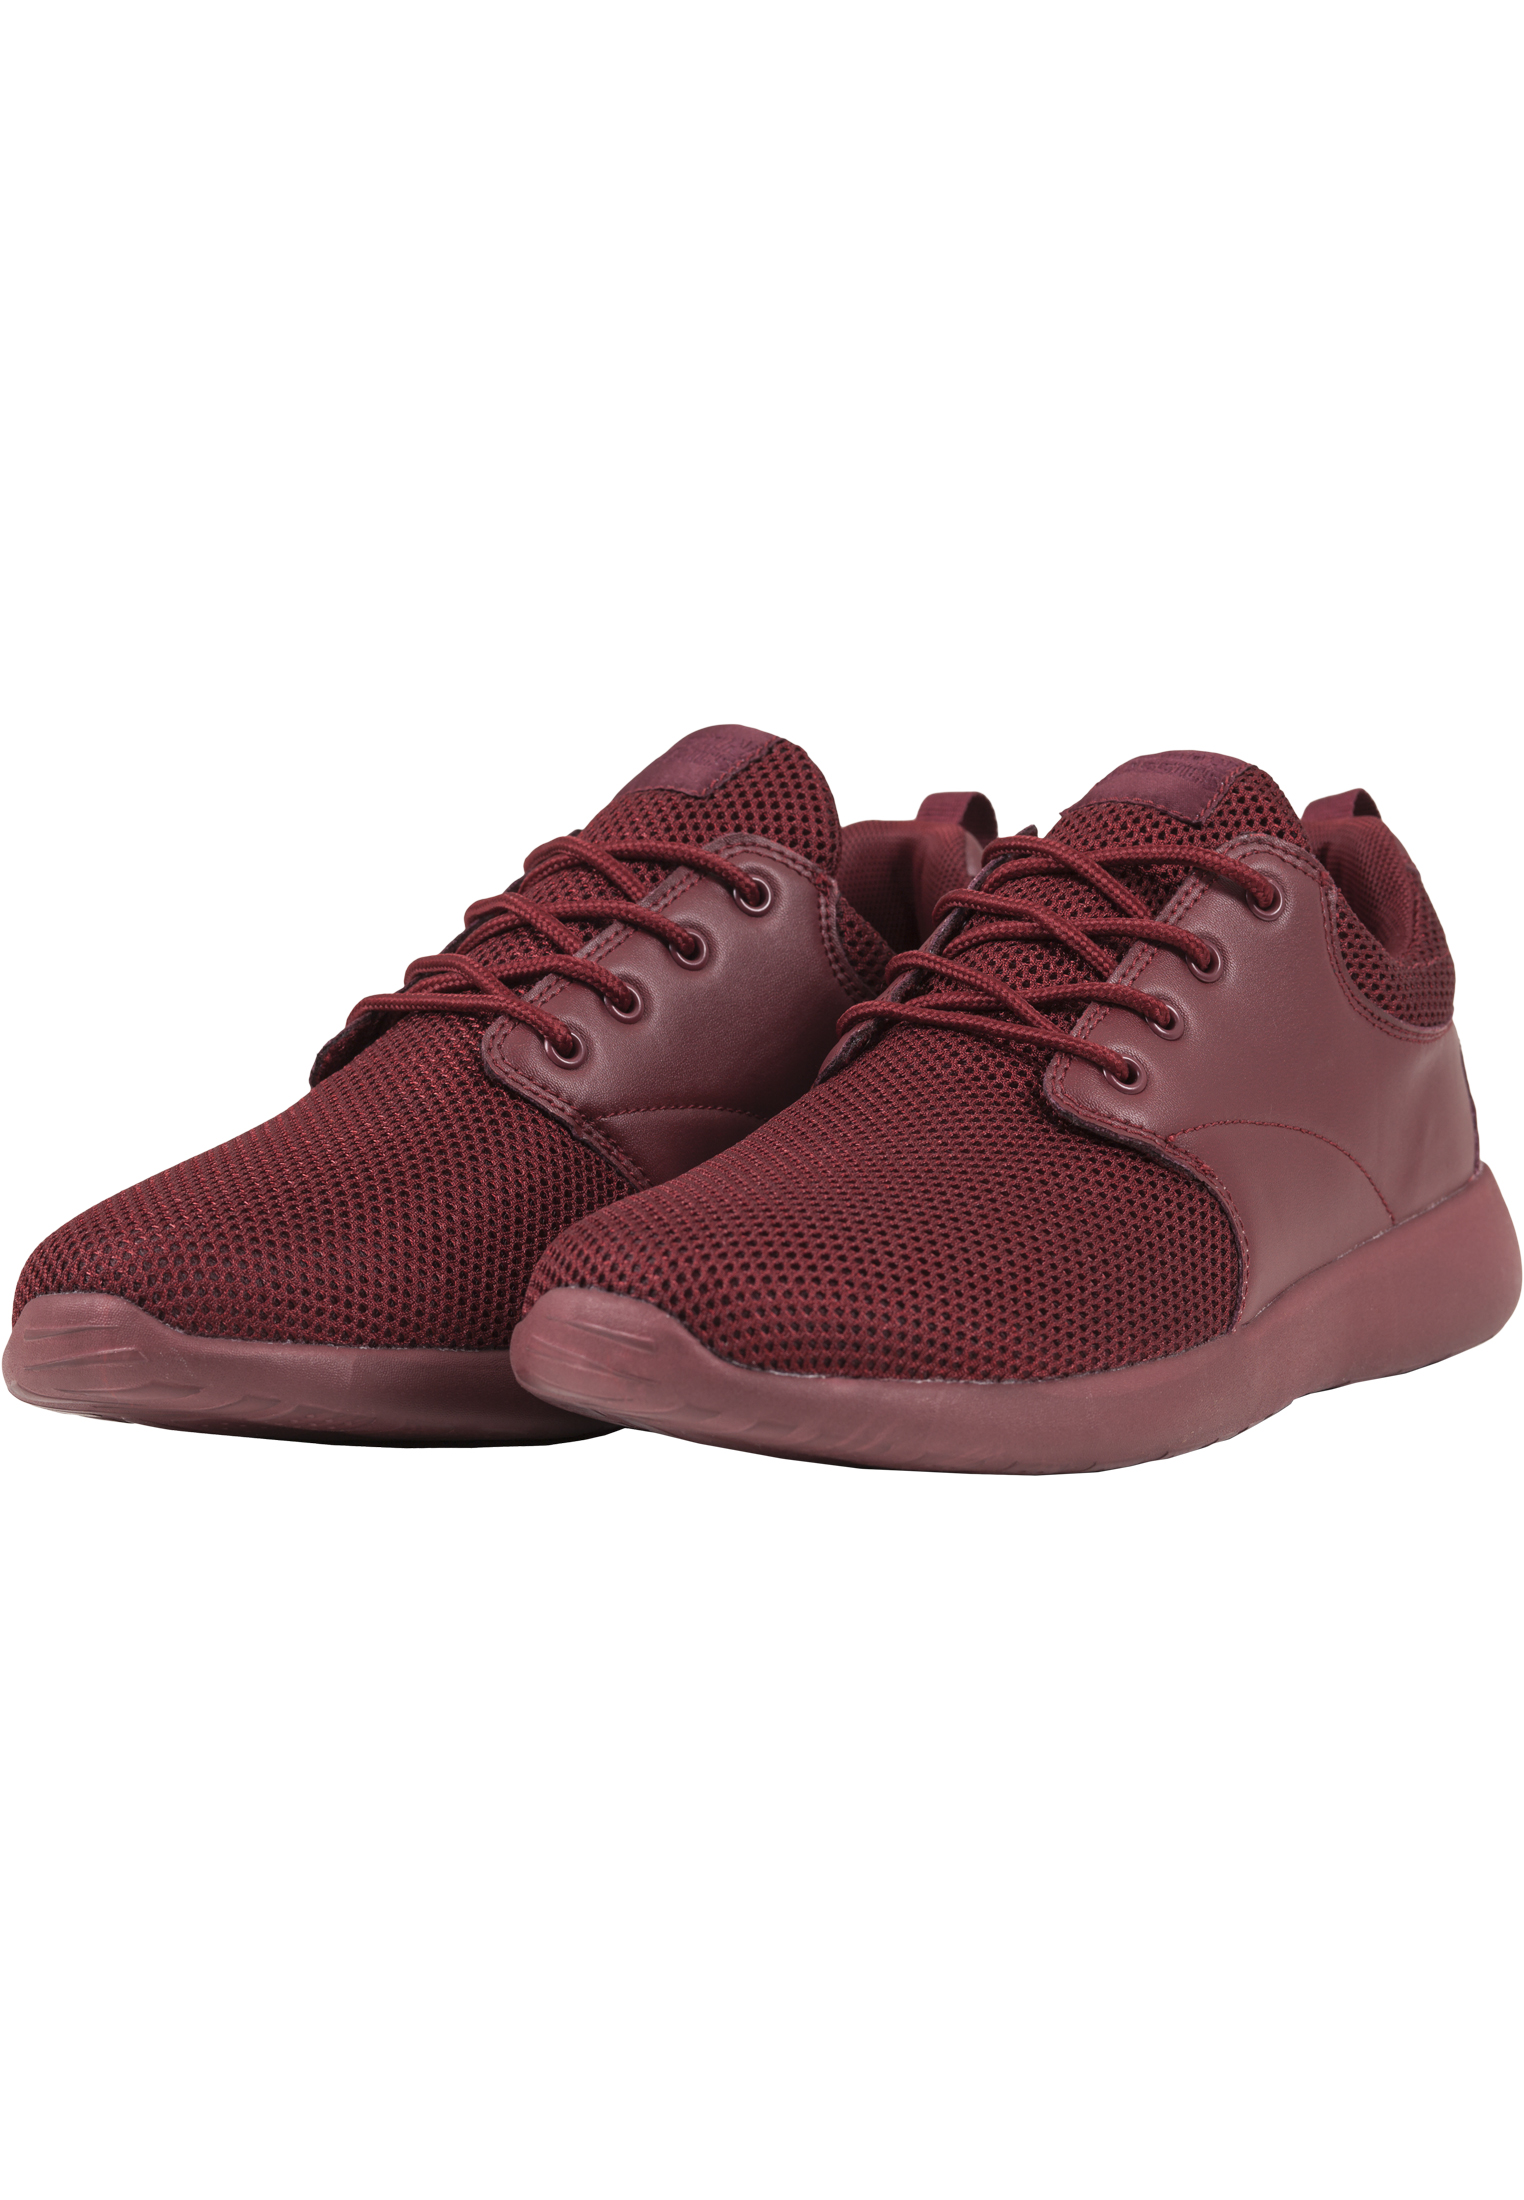 Schuhe Light Runner Shoe in Farbe burgundy/burgundy